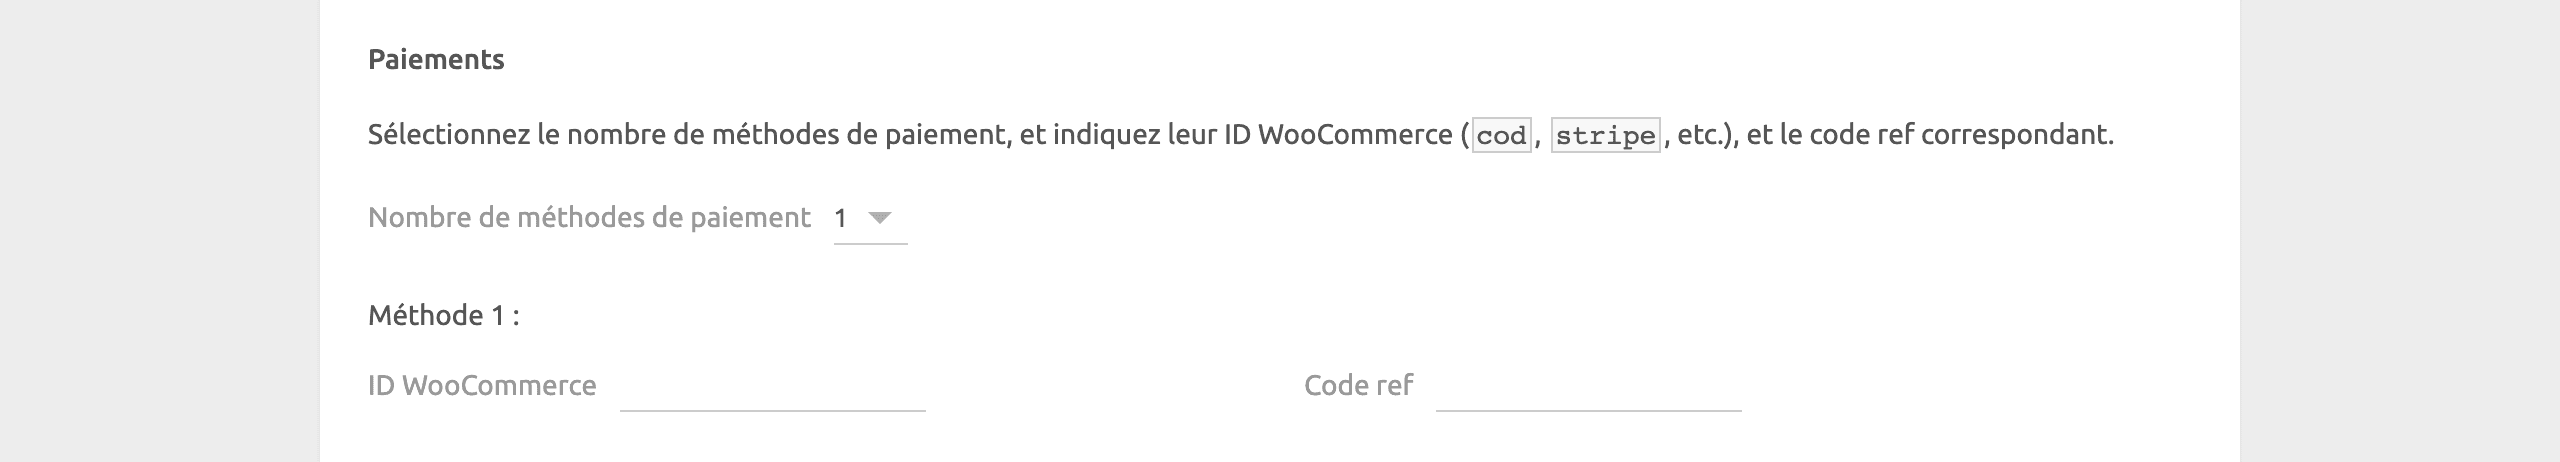 Page de configuration de WooCommerce Bridge, paiements